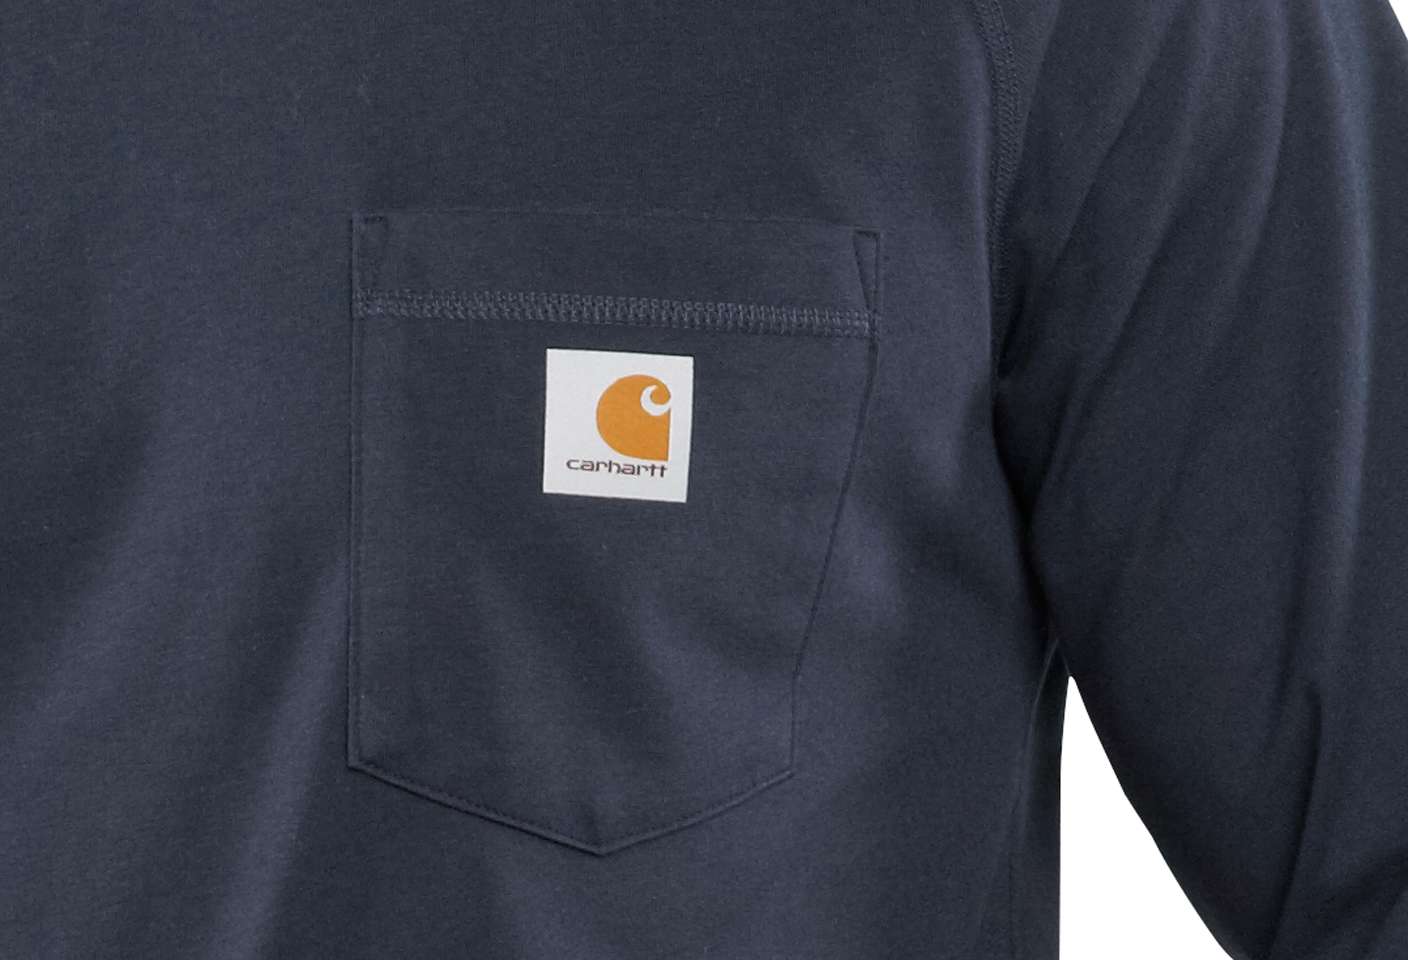 76-81cm Moss Heather Carhartt Core Logo T-Shirt Chest 30-32 XS